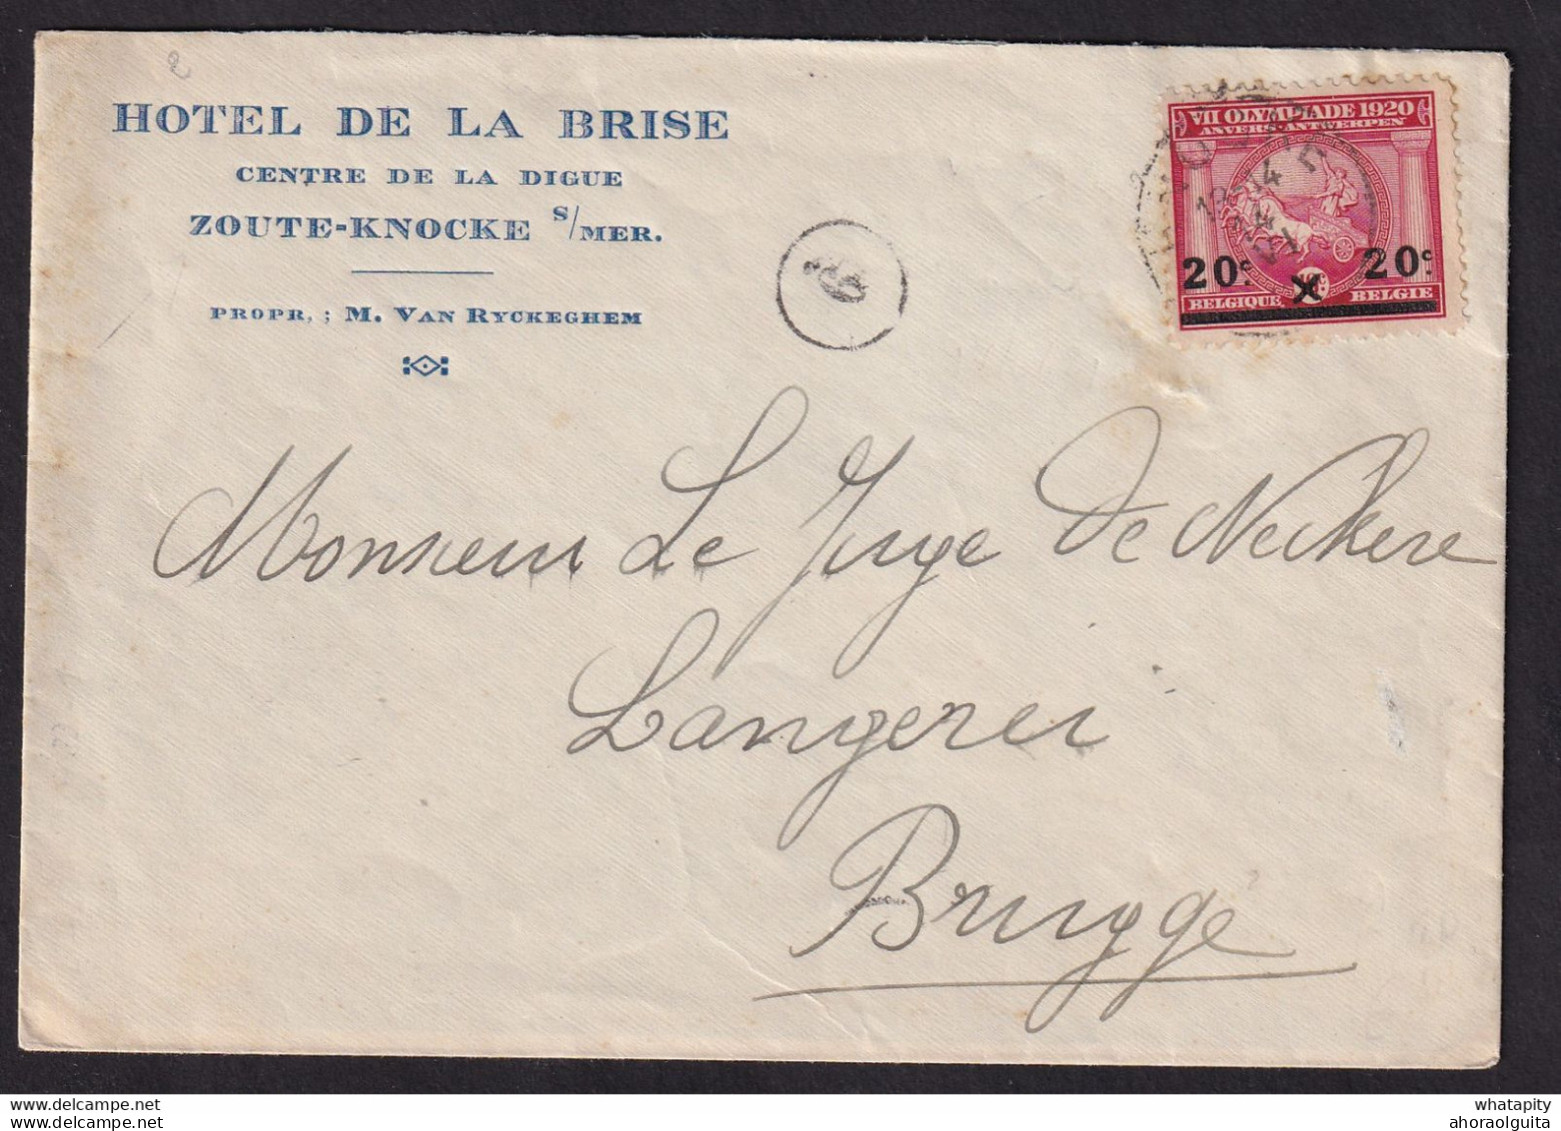 DDBB 577 - Enveloppe Illustrée TP Jeux Olympiques KNOKKE 1921 Vers BRUGGE - Entete Et Gravure Hotel De La Brise, Digue - Zomer 1920: Antwerpen